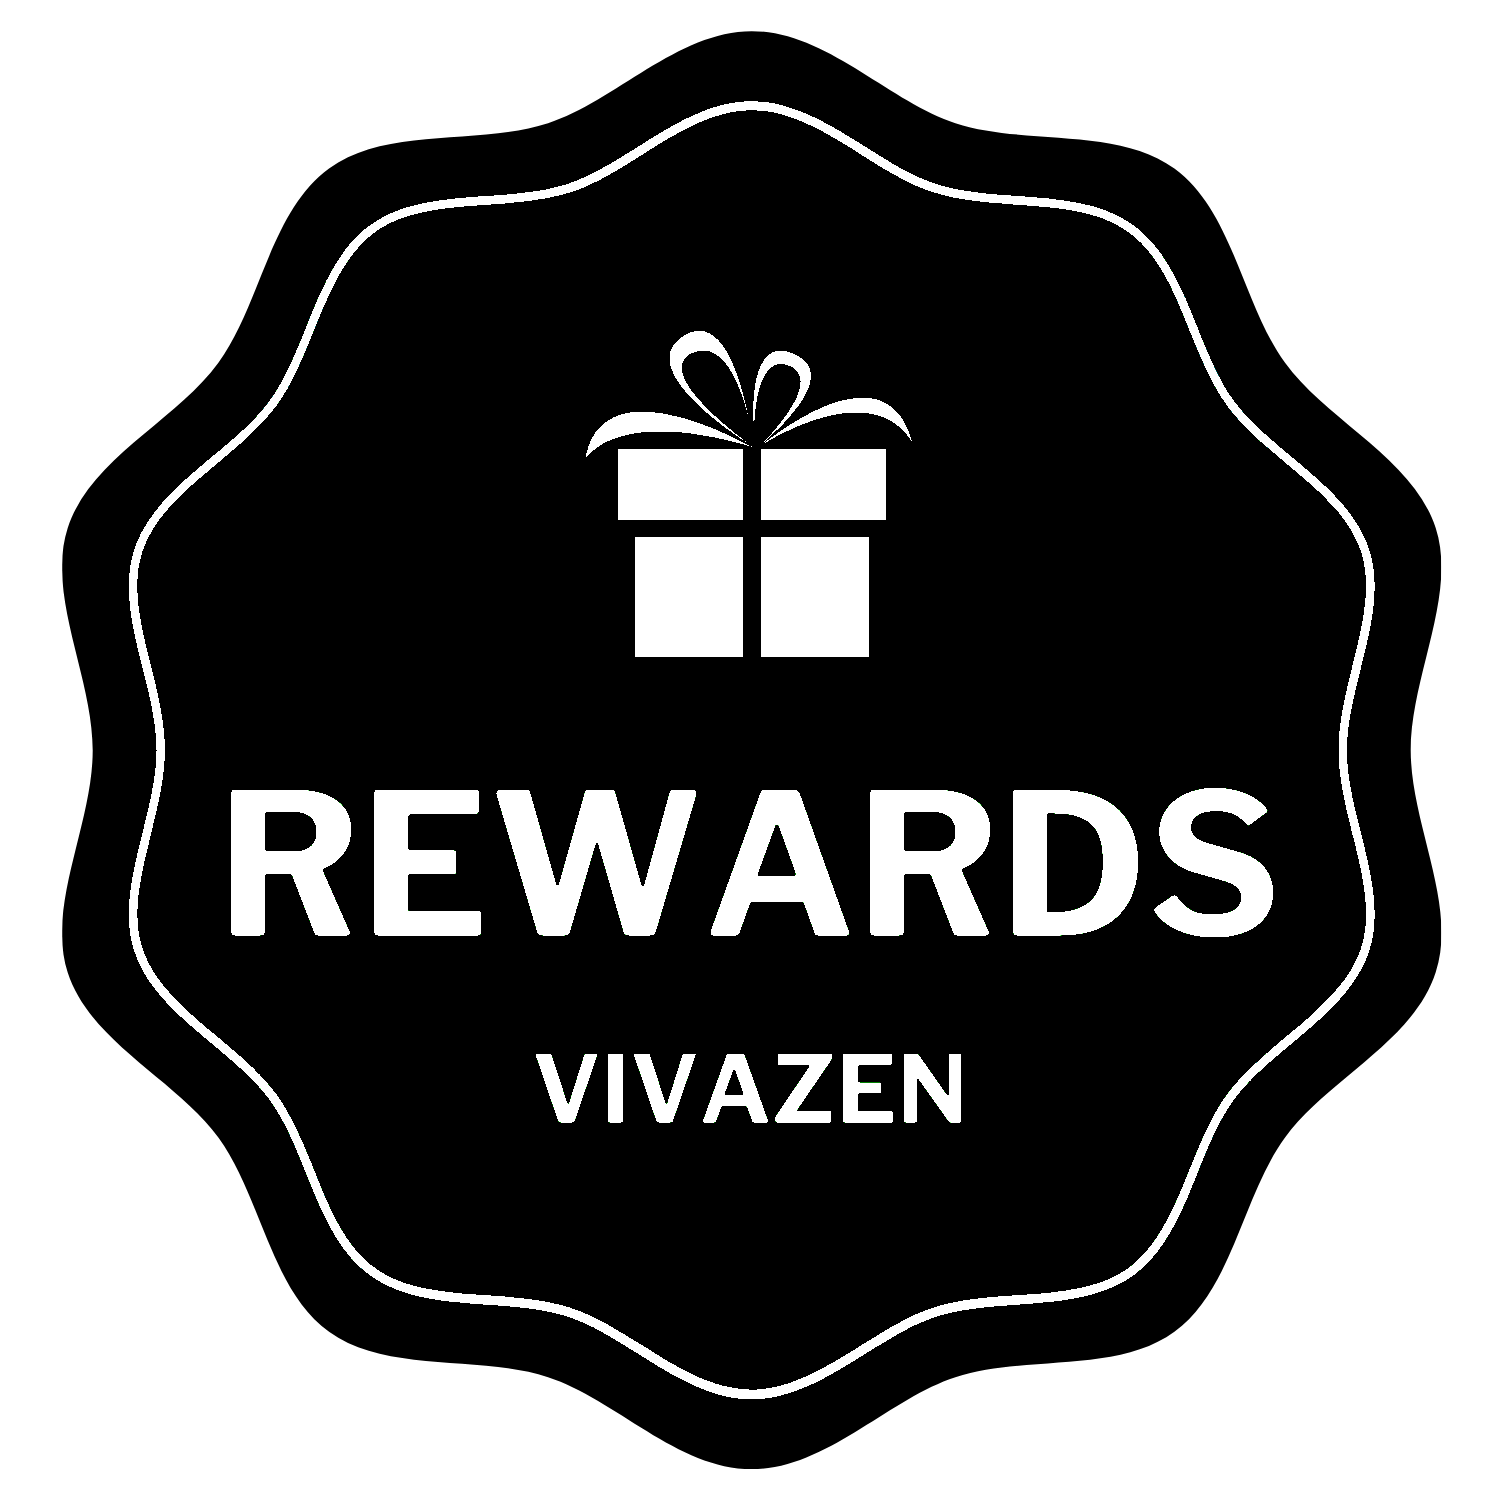 VIVAZEN Rewards